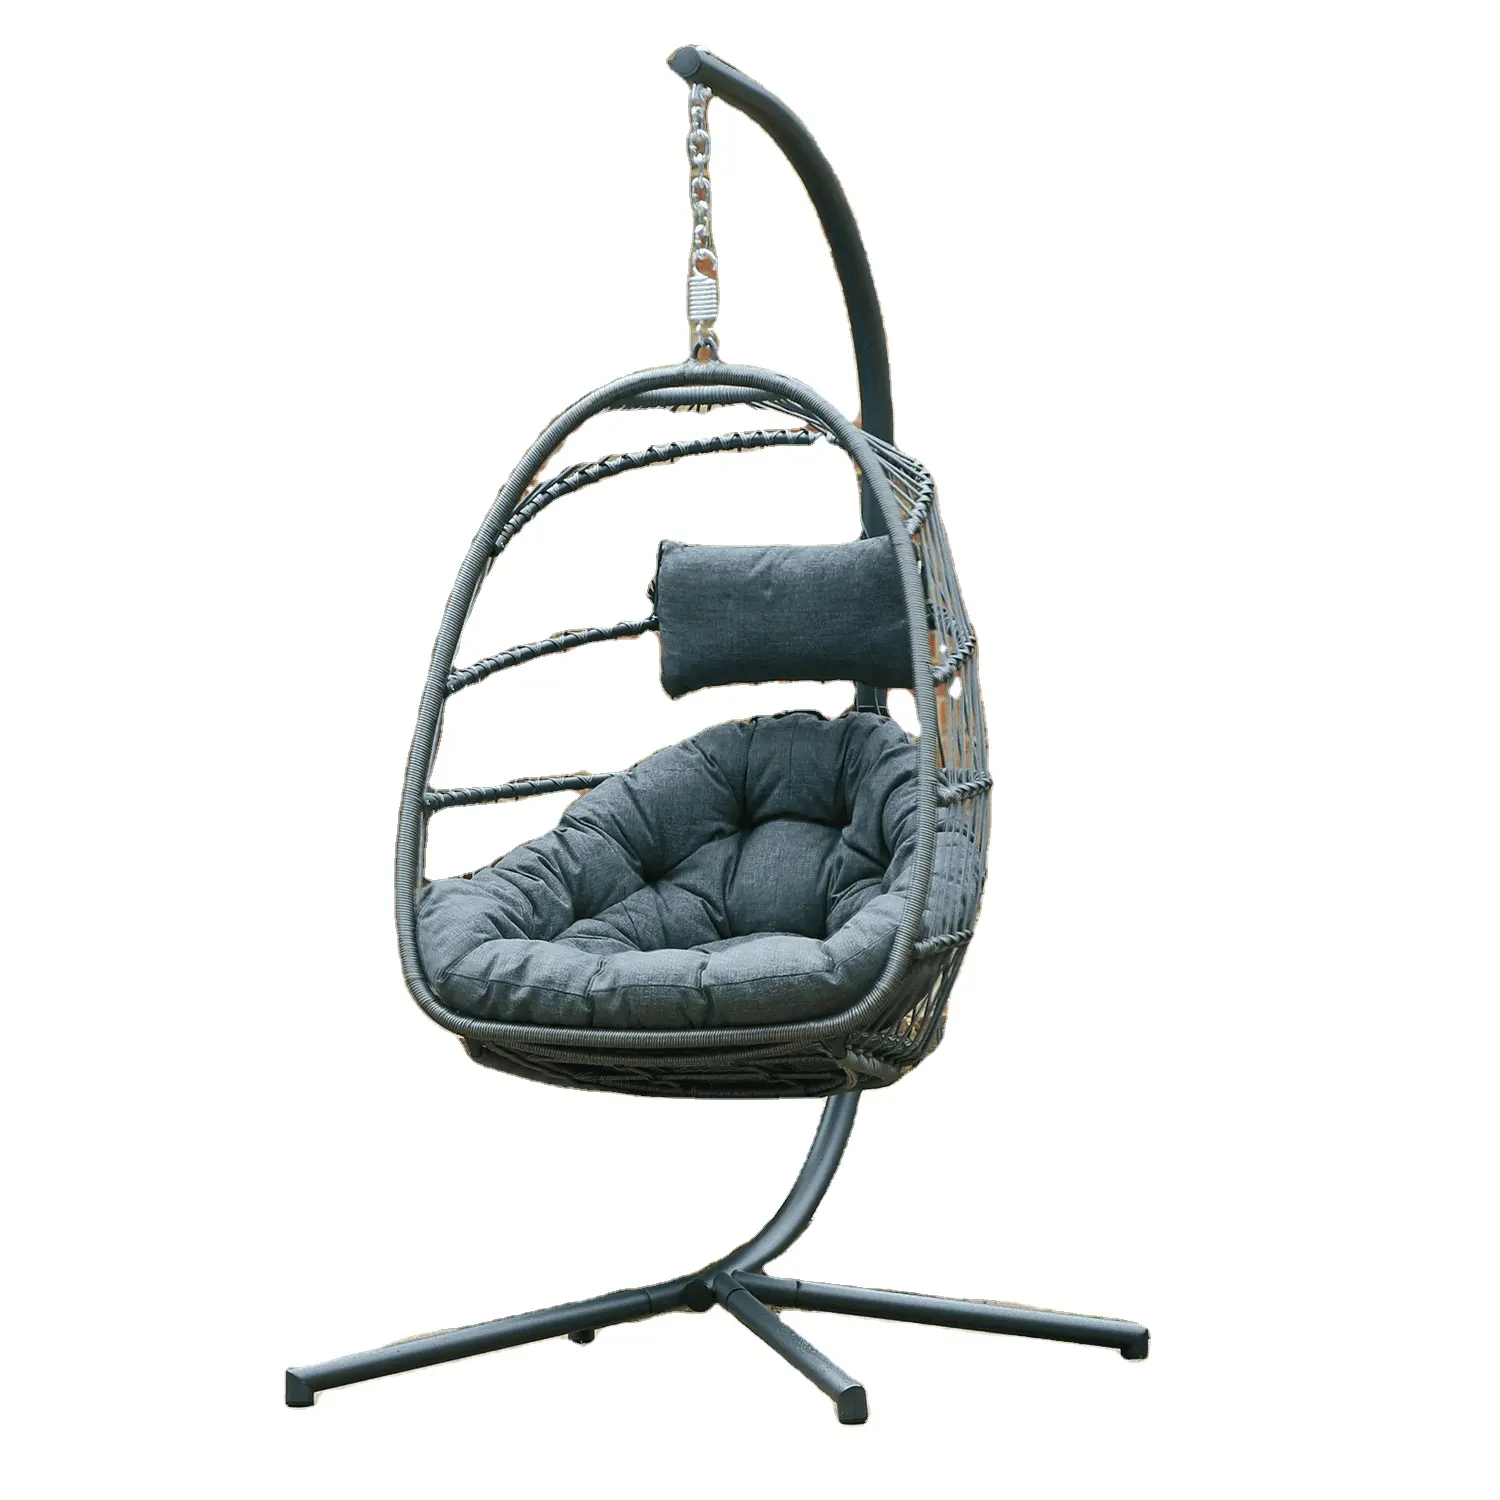 Personnalisé lune meubles de jardin oeuf en osier gris coussin rotin balançoire chaise suspendue avec support en métal